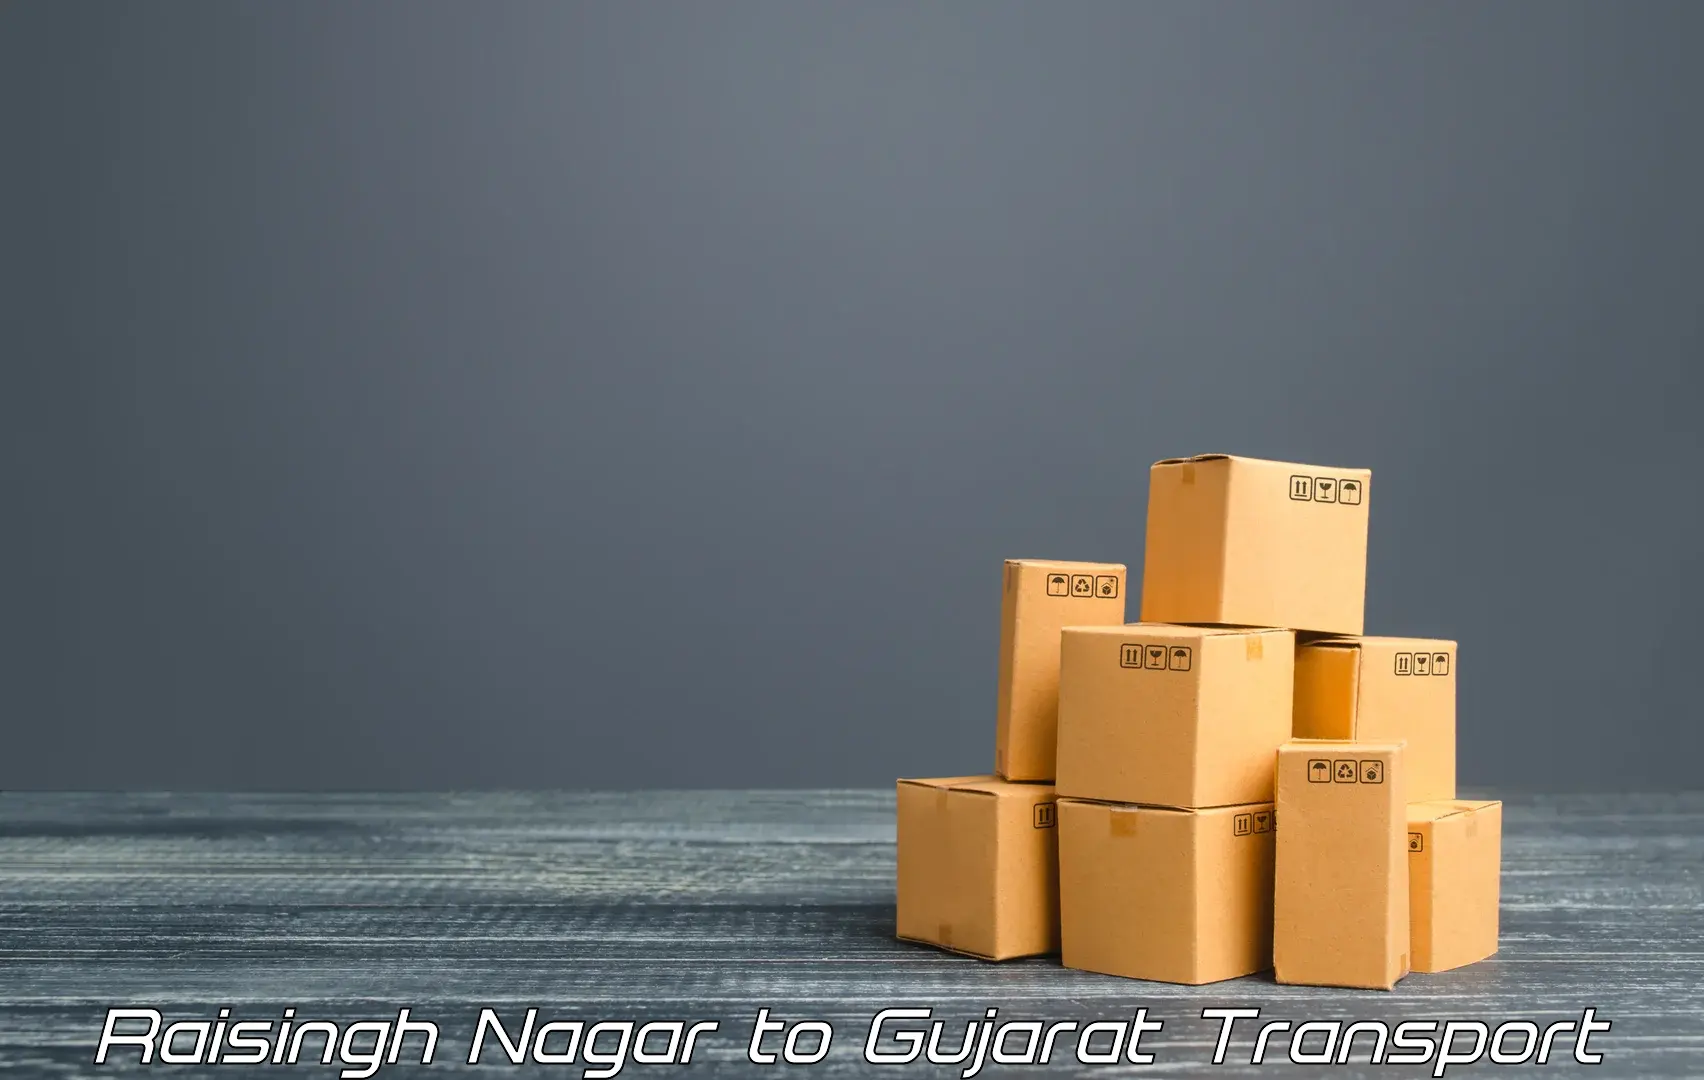 Bike shipping service Raisingh Nagar to Gujarat